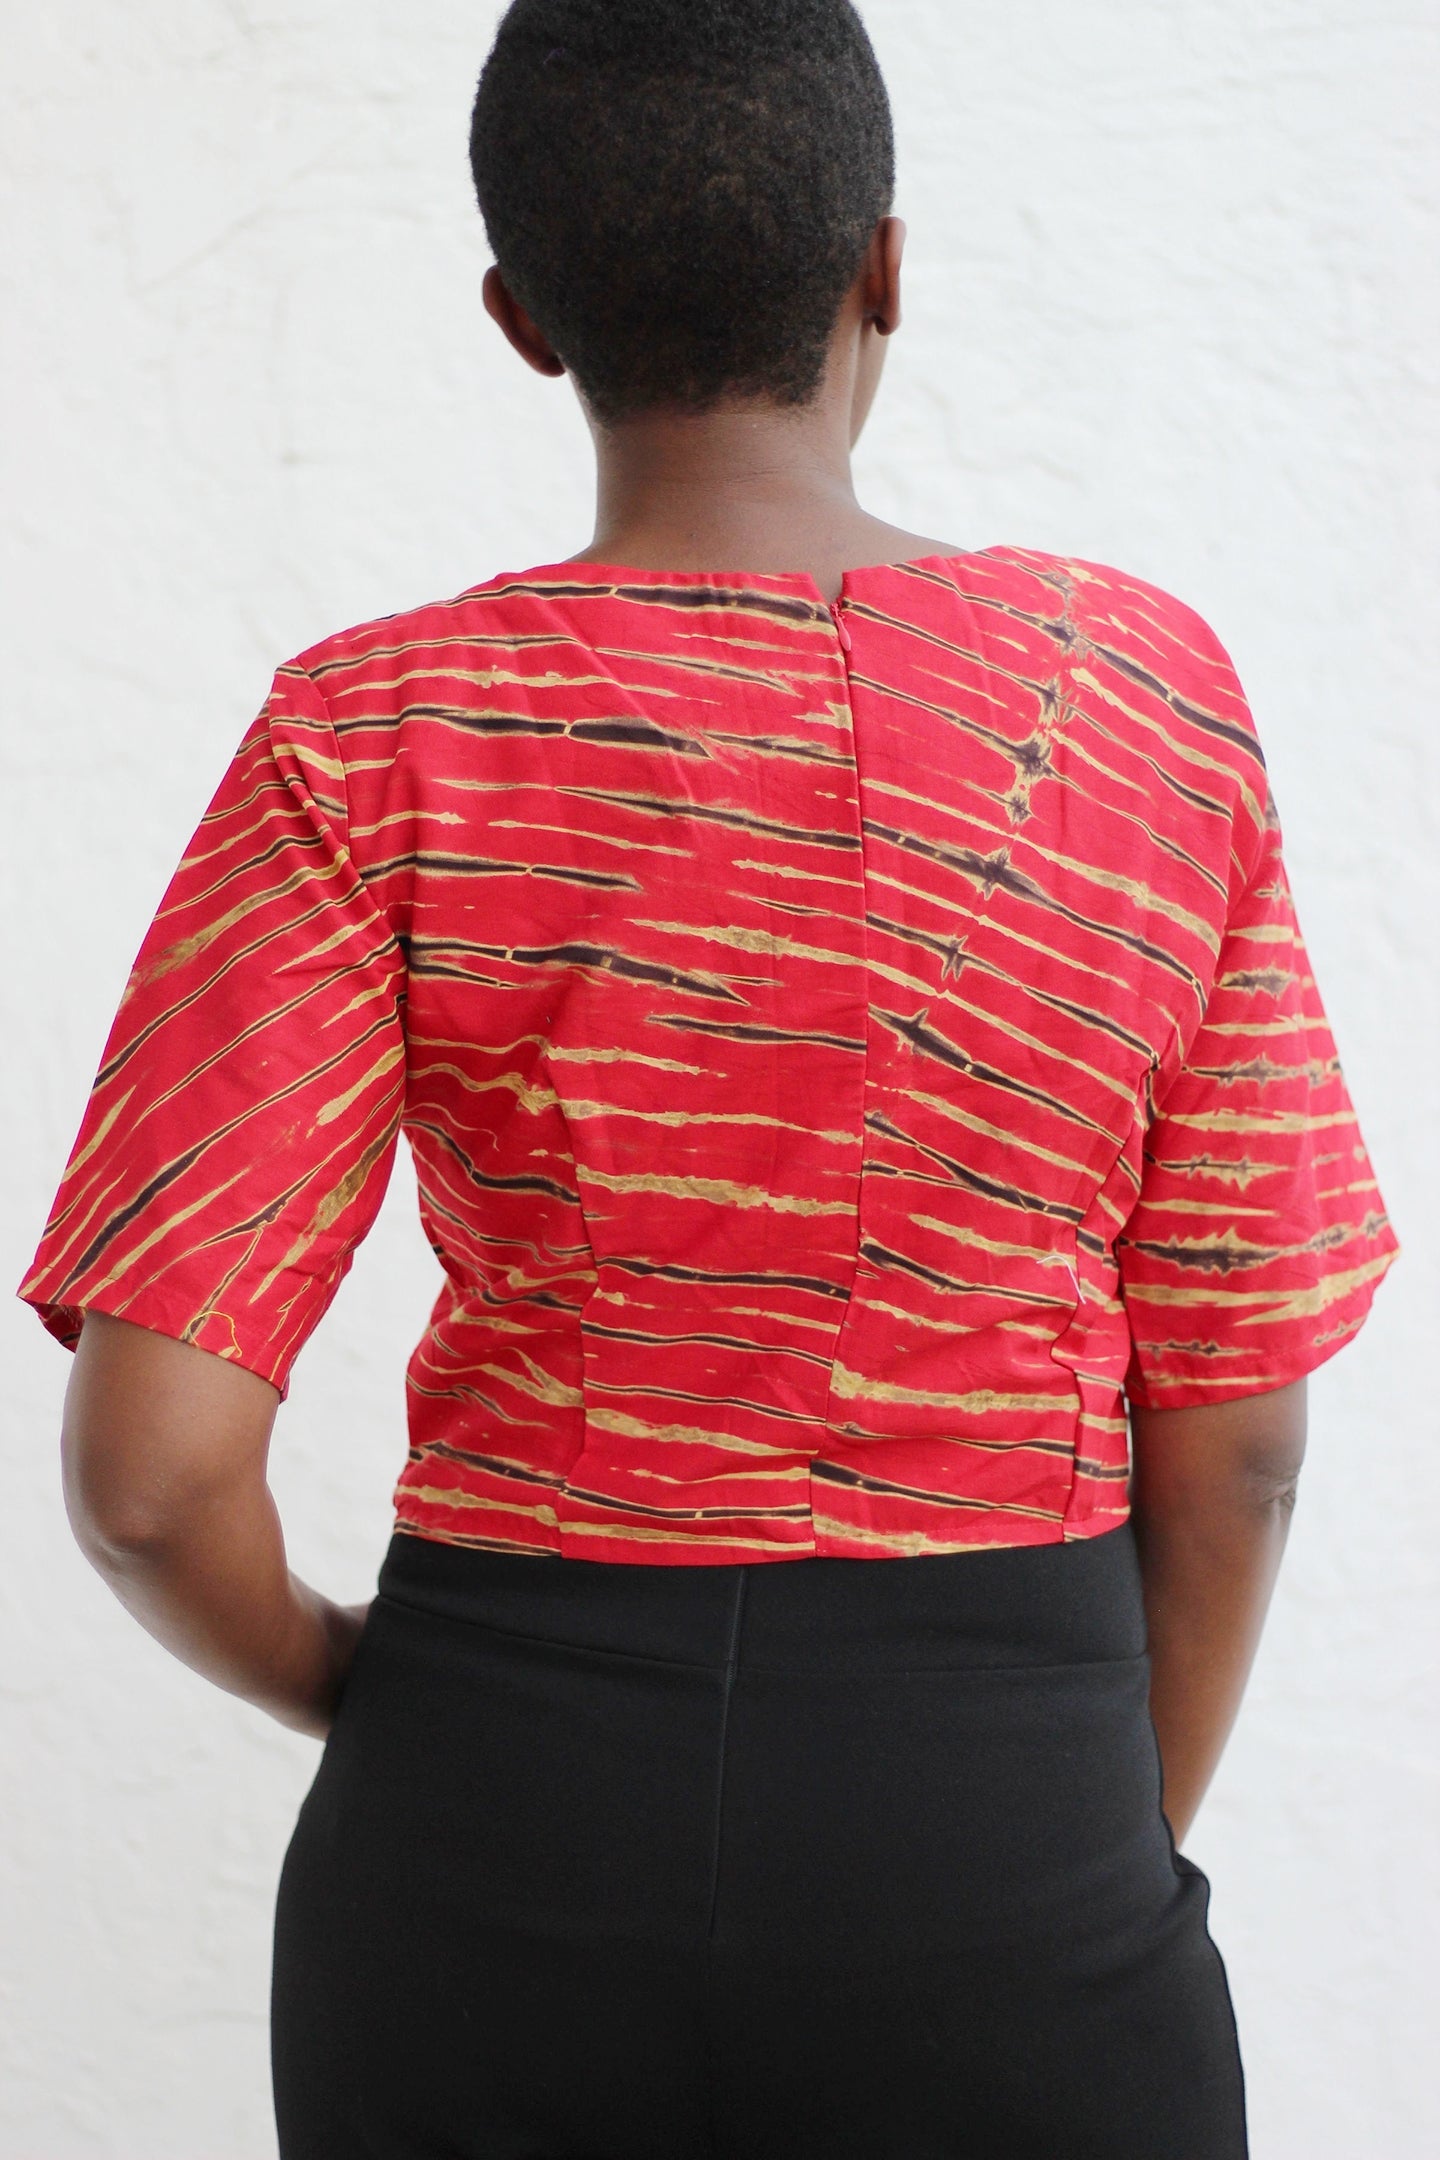 African Print /Ankara/Kitenge Short Sleeved Crop Top - Africas Closet